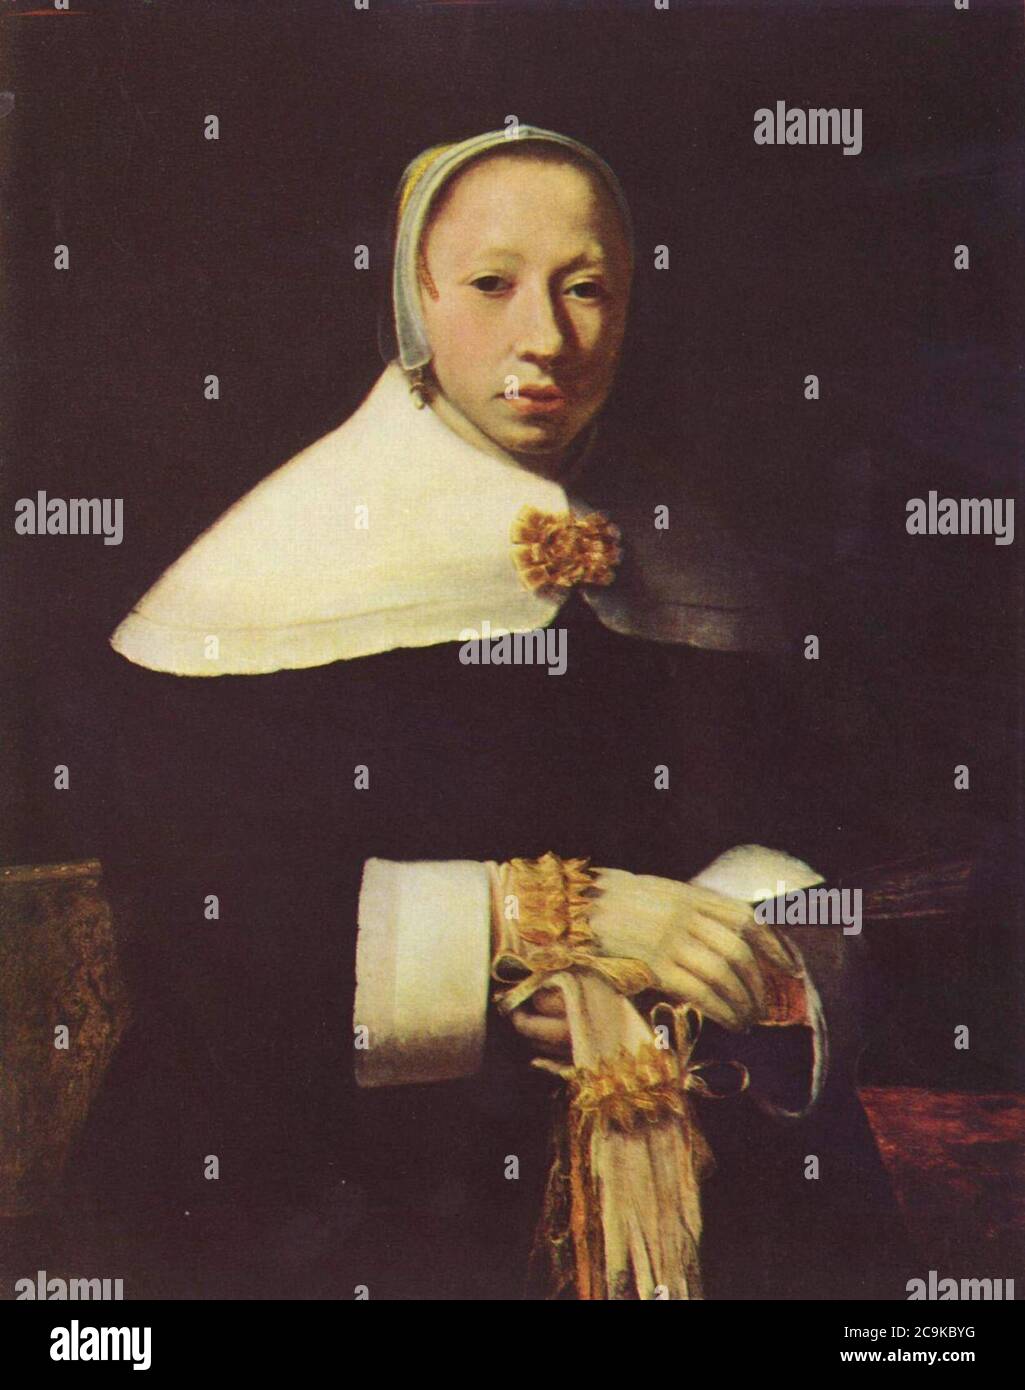 Jan Vermeer van Delft 017. Stock Photo